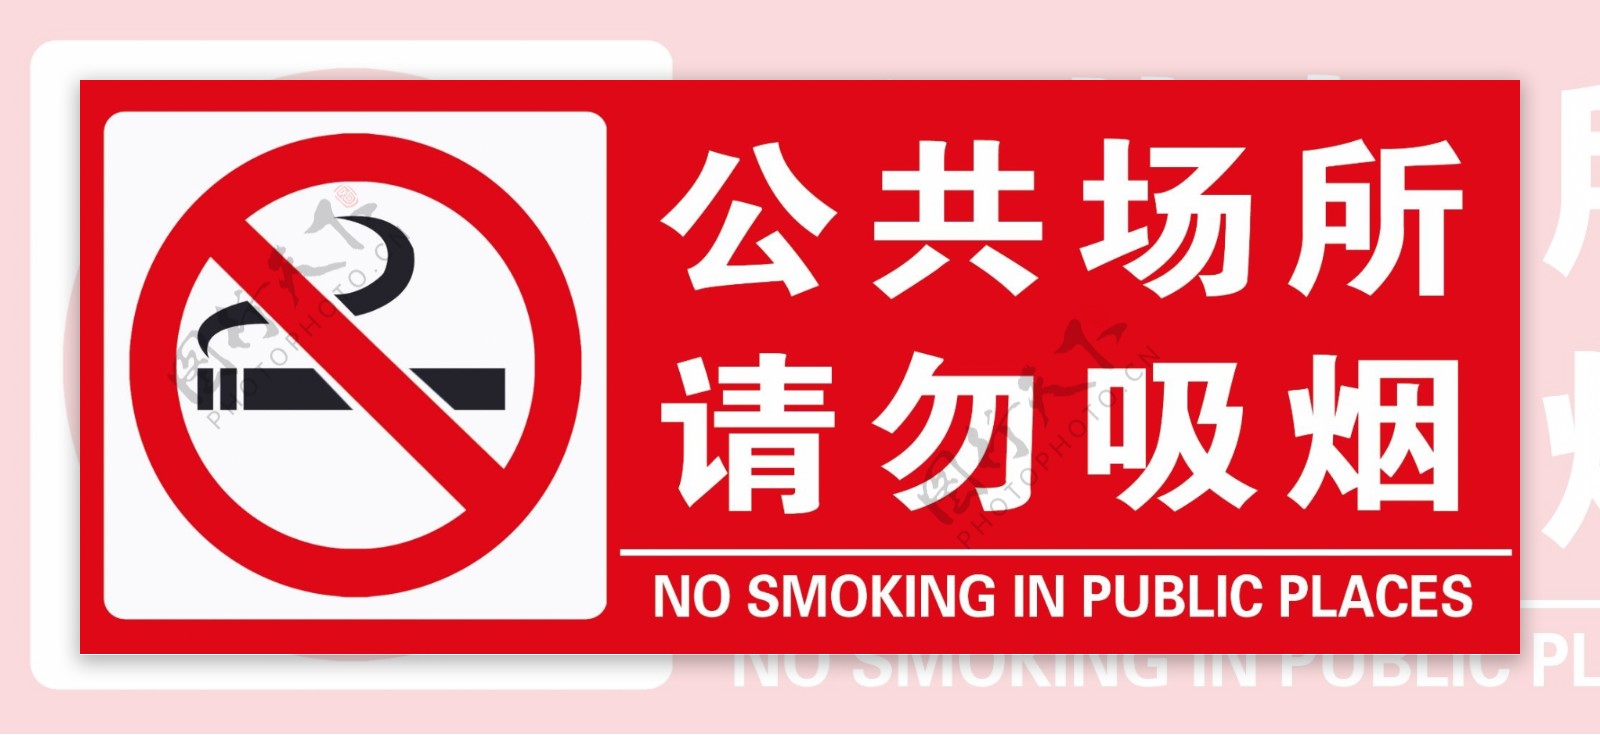 公共场所请匆吸烟